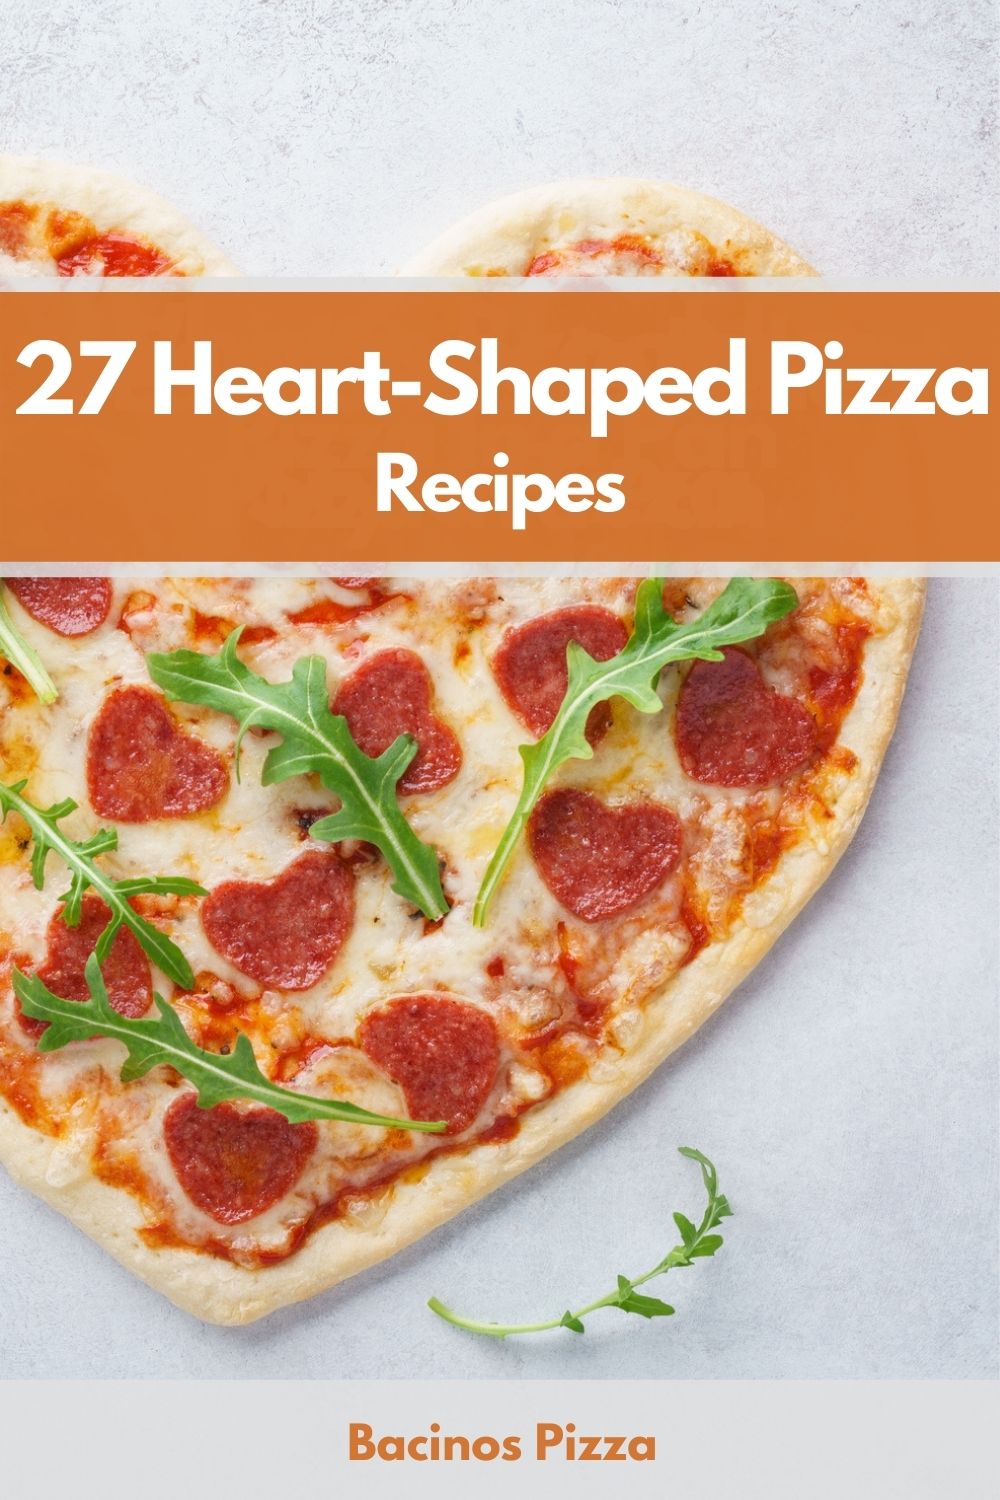 27 Heart-Shaped Pizza Recipes pin